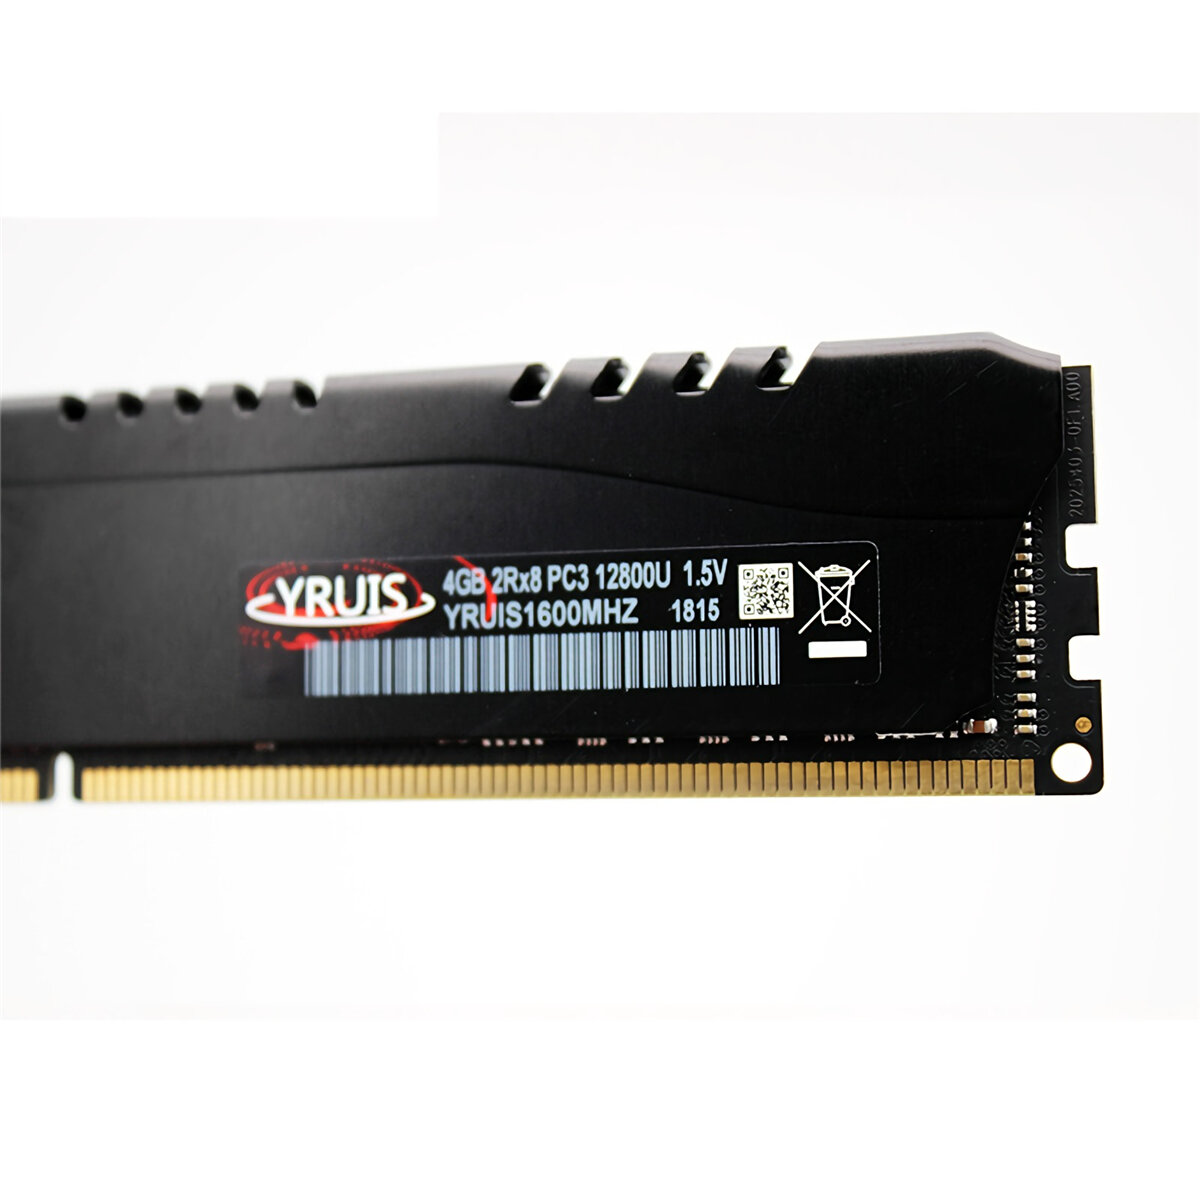 YRUIS DDR3 4G / 8G 1600Mhz RAMメモリースティックデスクトップコンピューターのメモリーカード